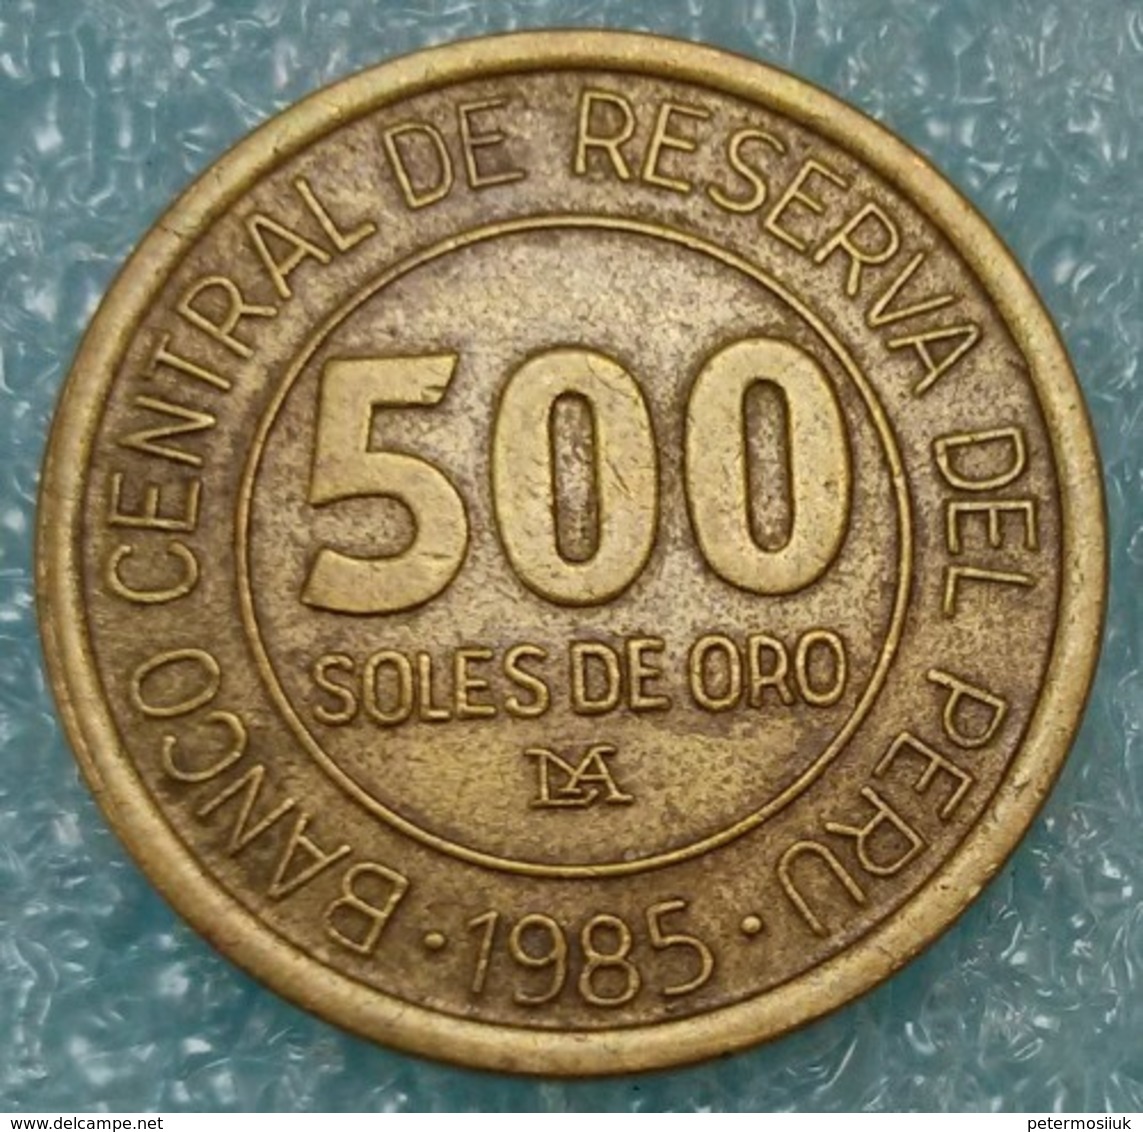 Peru 500 Soles, 1985 -0773 - Peru